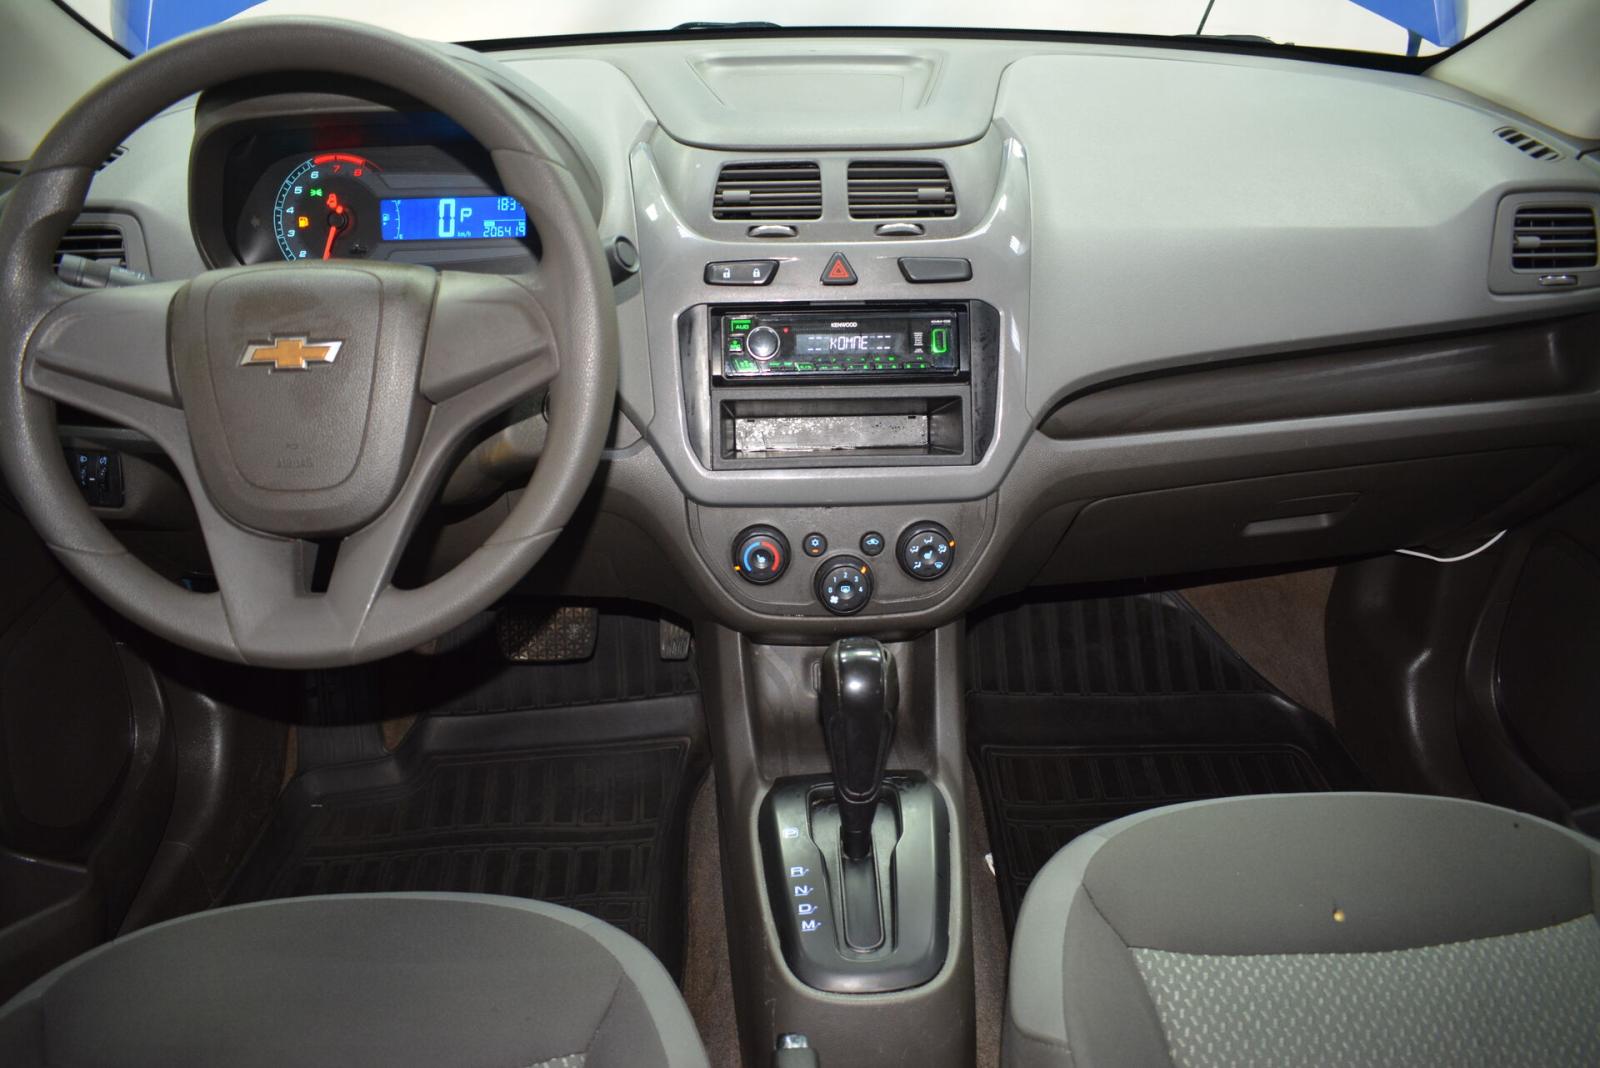 Chevrolet Cobalt, II 2014г.